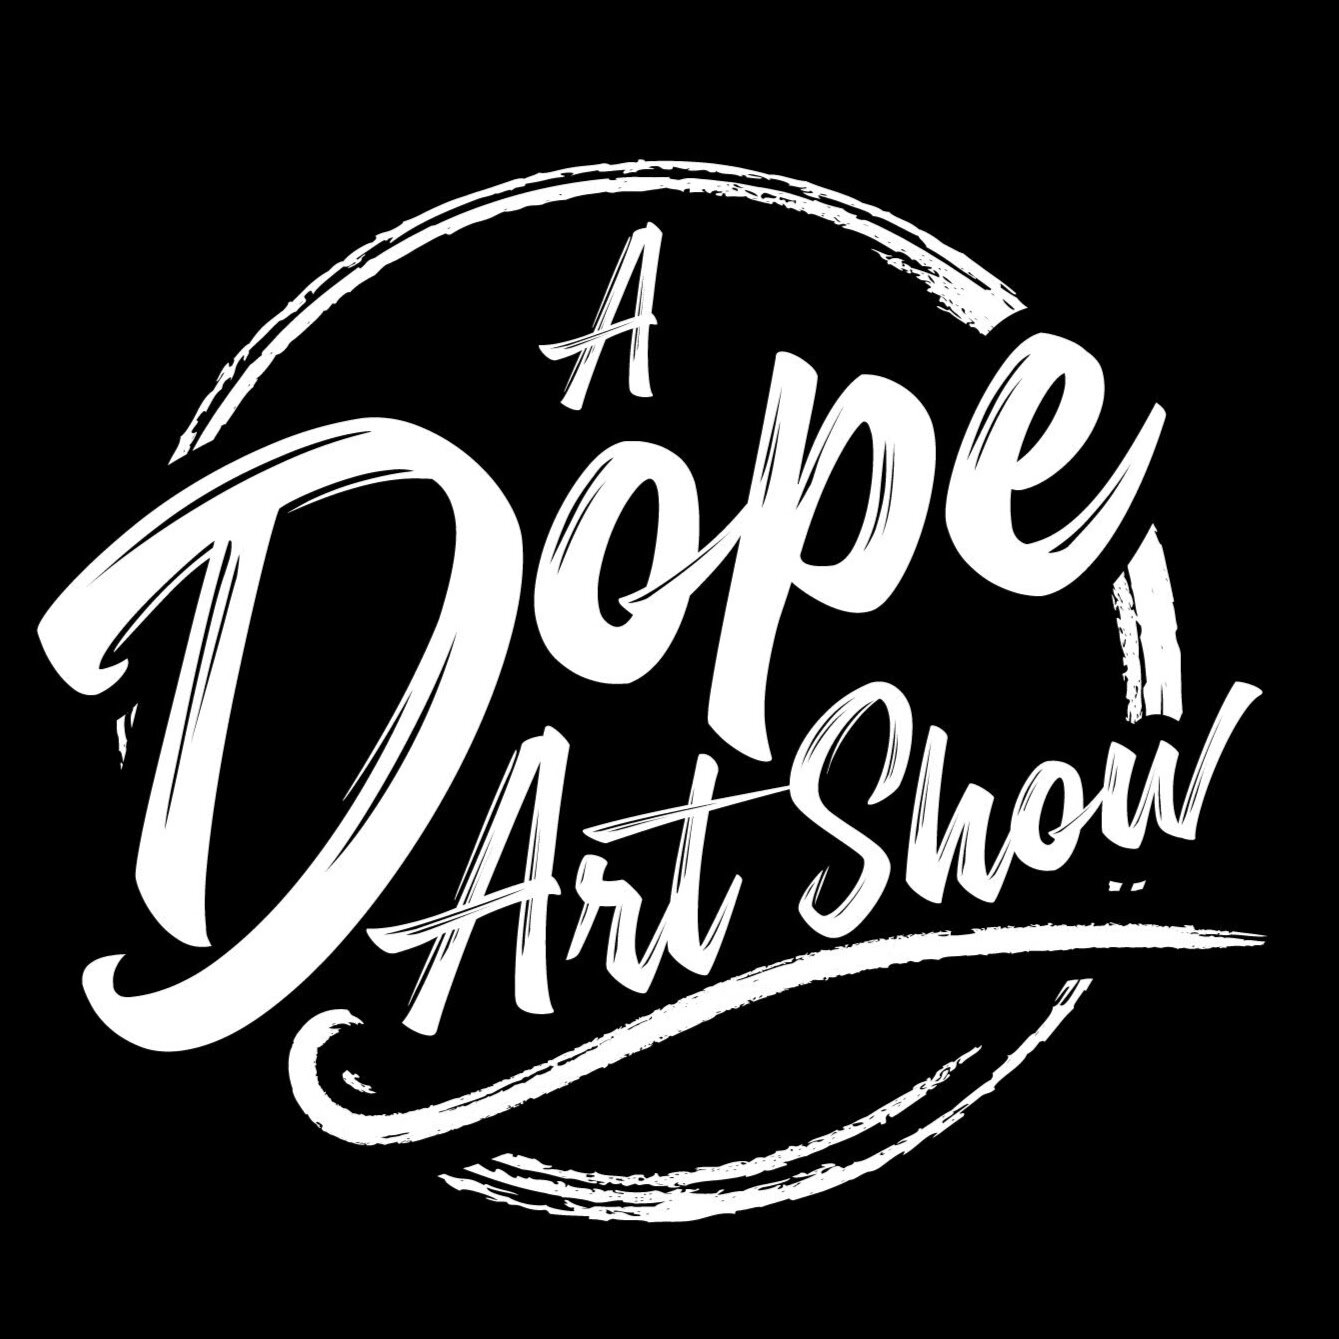 A Dope Art Show